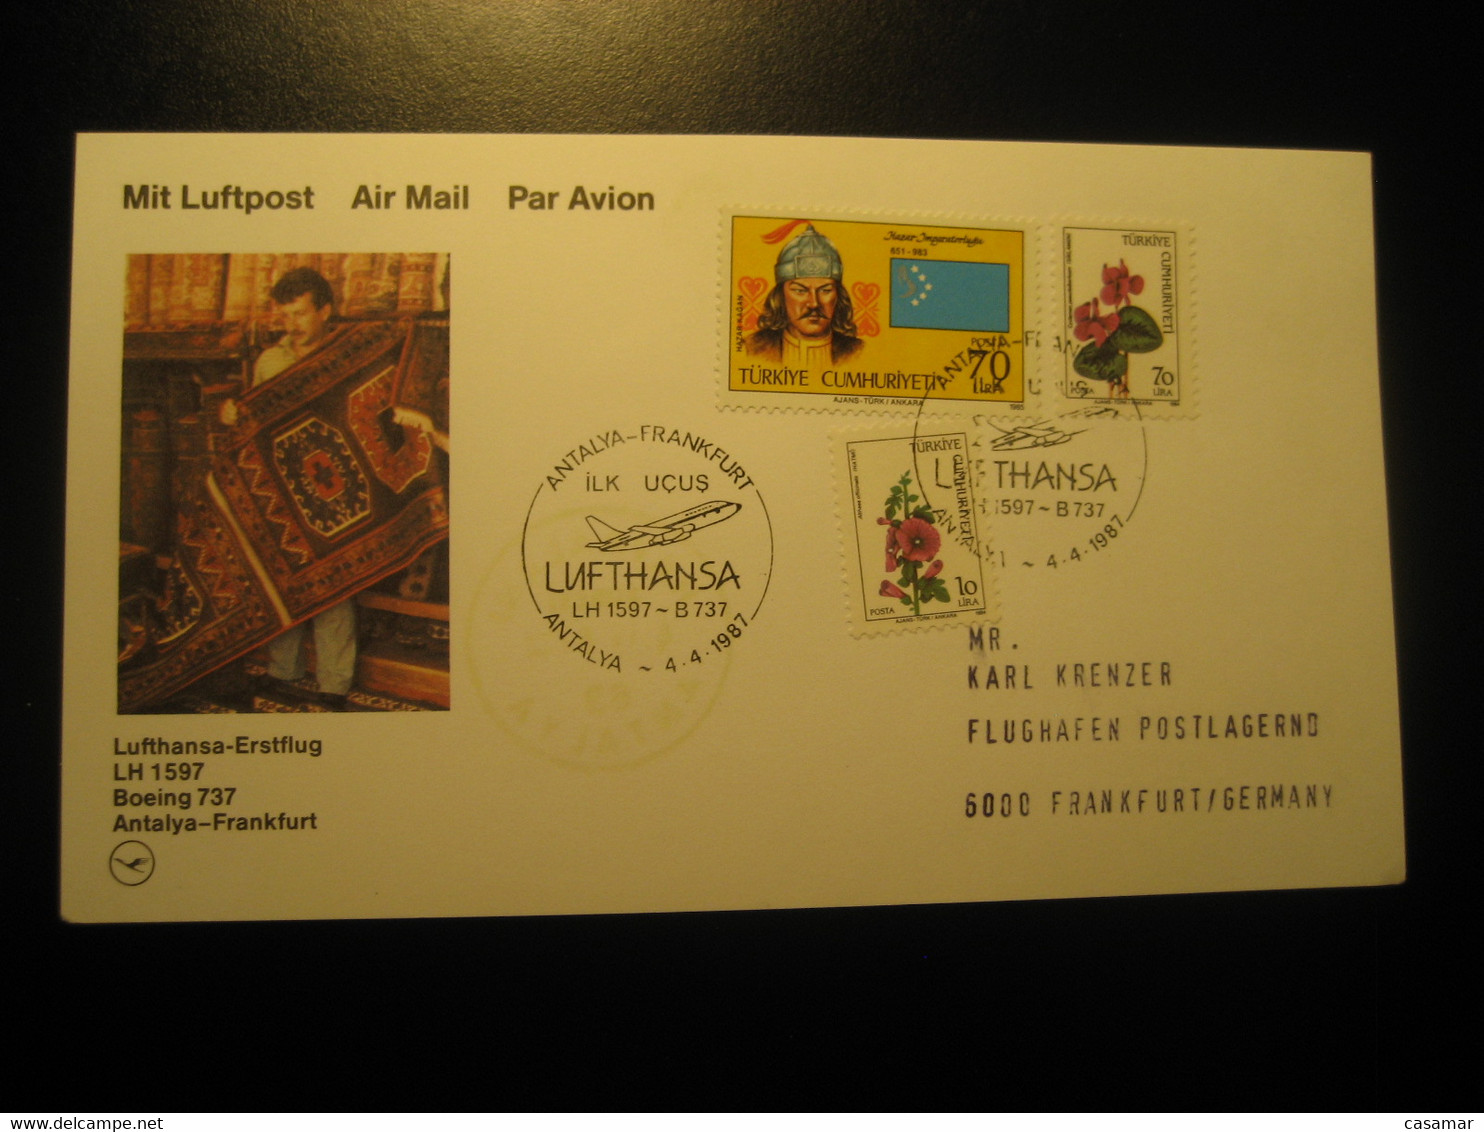 Antalya Frankfurt 1987 Lufthansa Airline Boeing 737 First Flight 3 Stamp Cancel Card Turkey Germany - Poste Aérienne